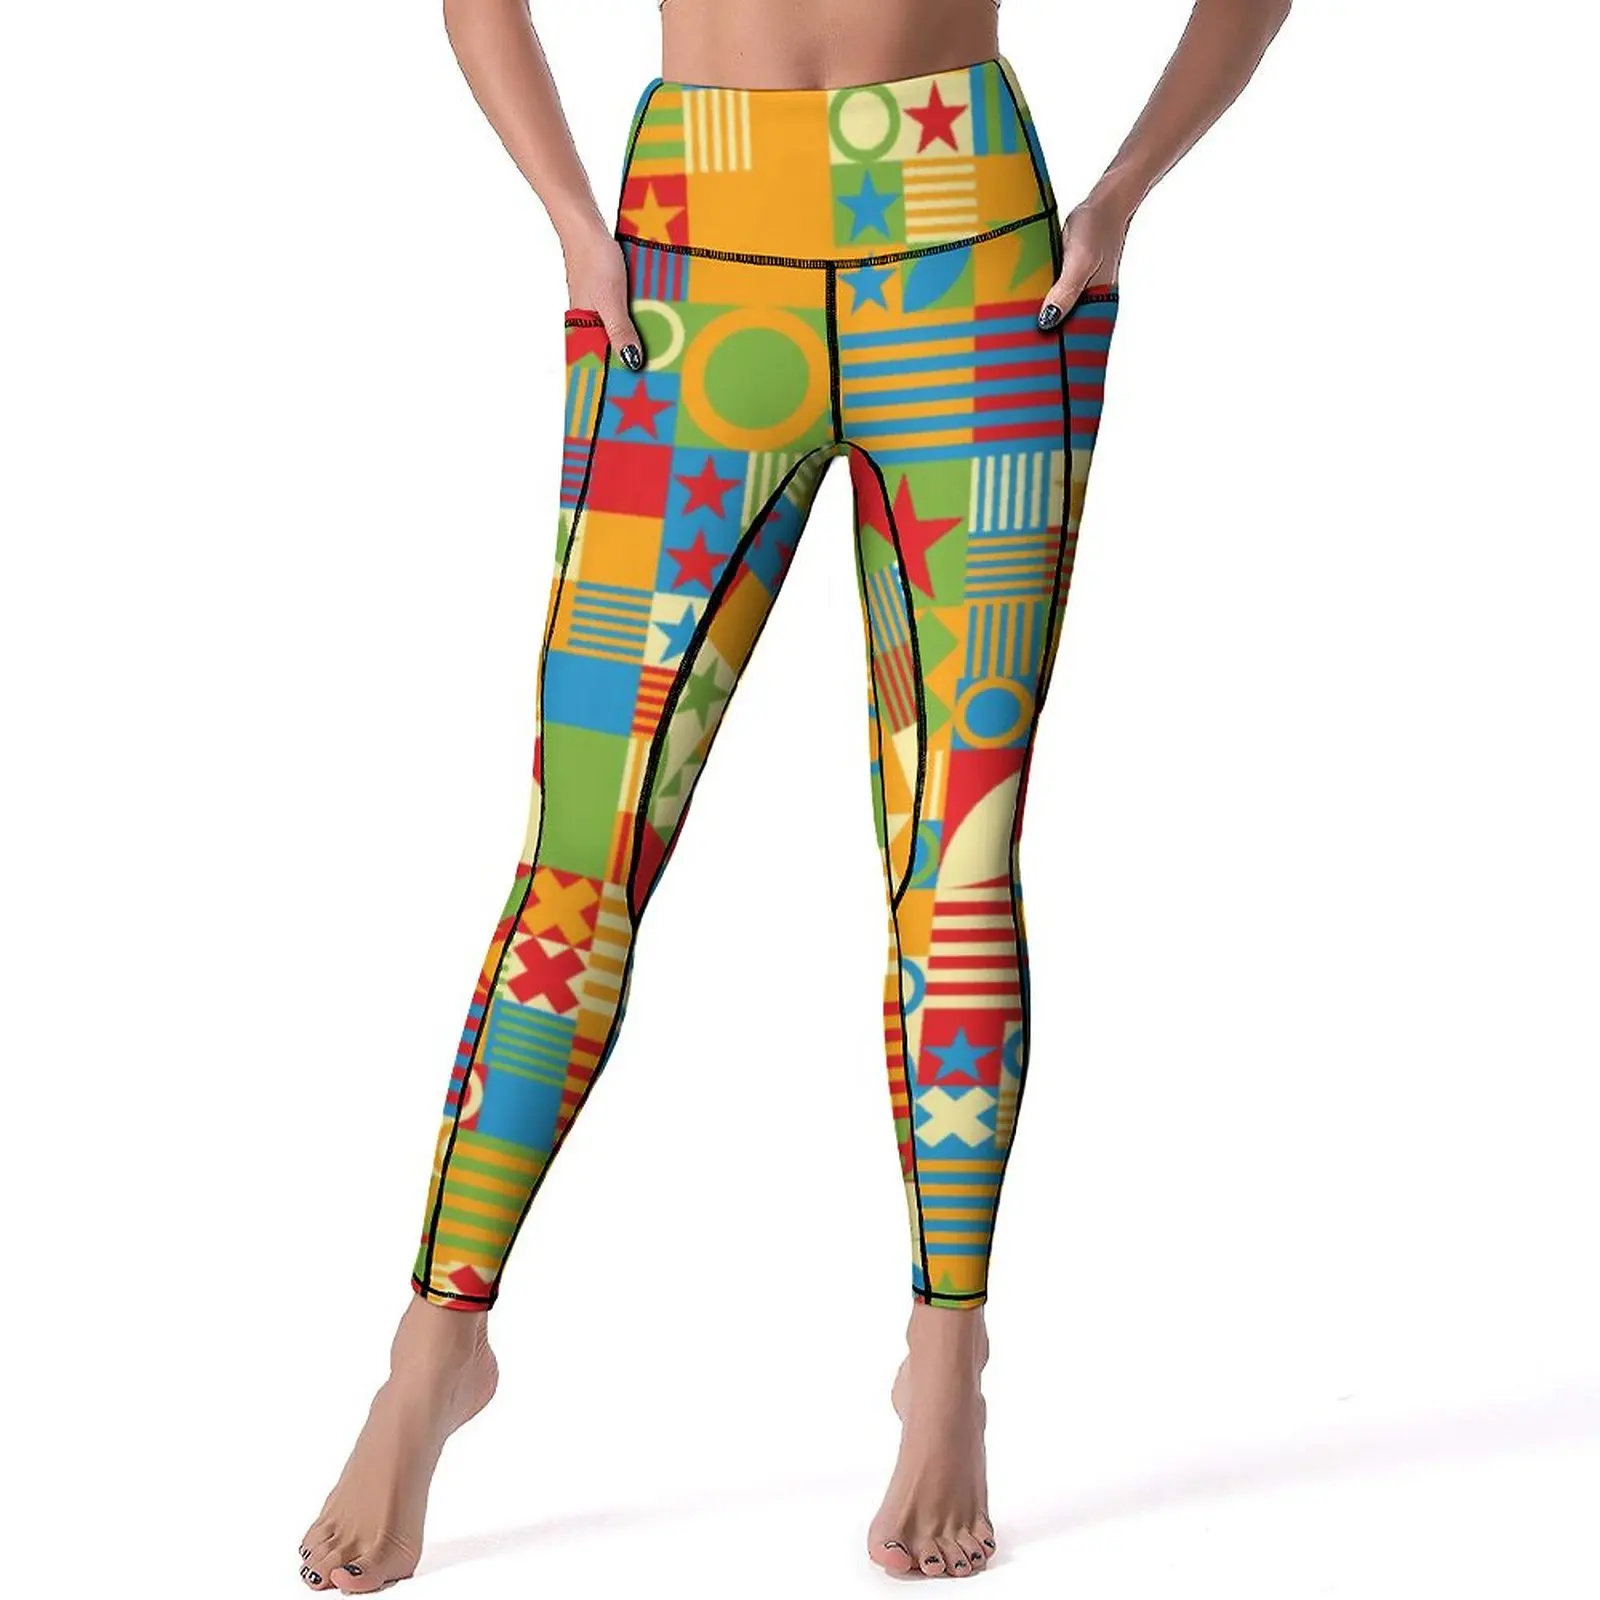 

Штаны Для Йоги в стиле ретро 60-х, пикантные цветные геометрические леггинсы с принтом, дышащие спортивные трико с эффектом пуш-ап для фитнеса и спортзала